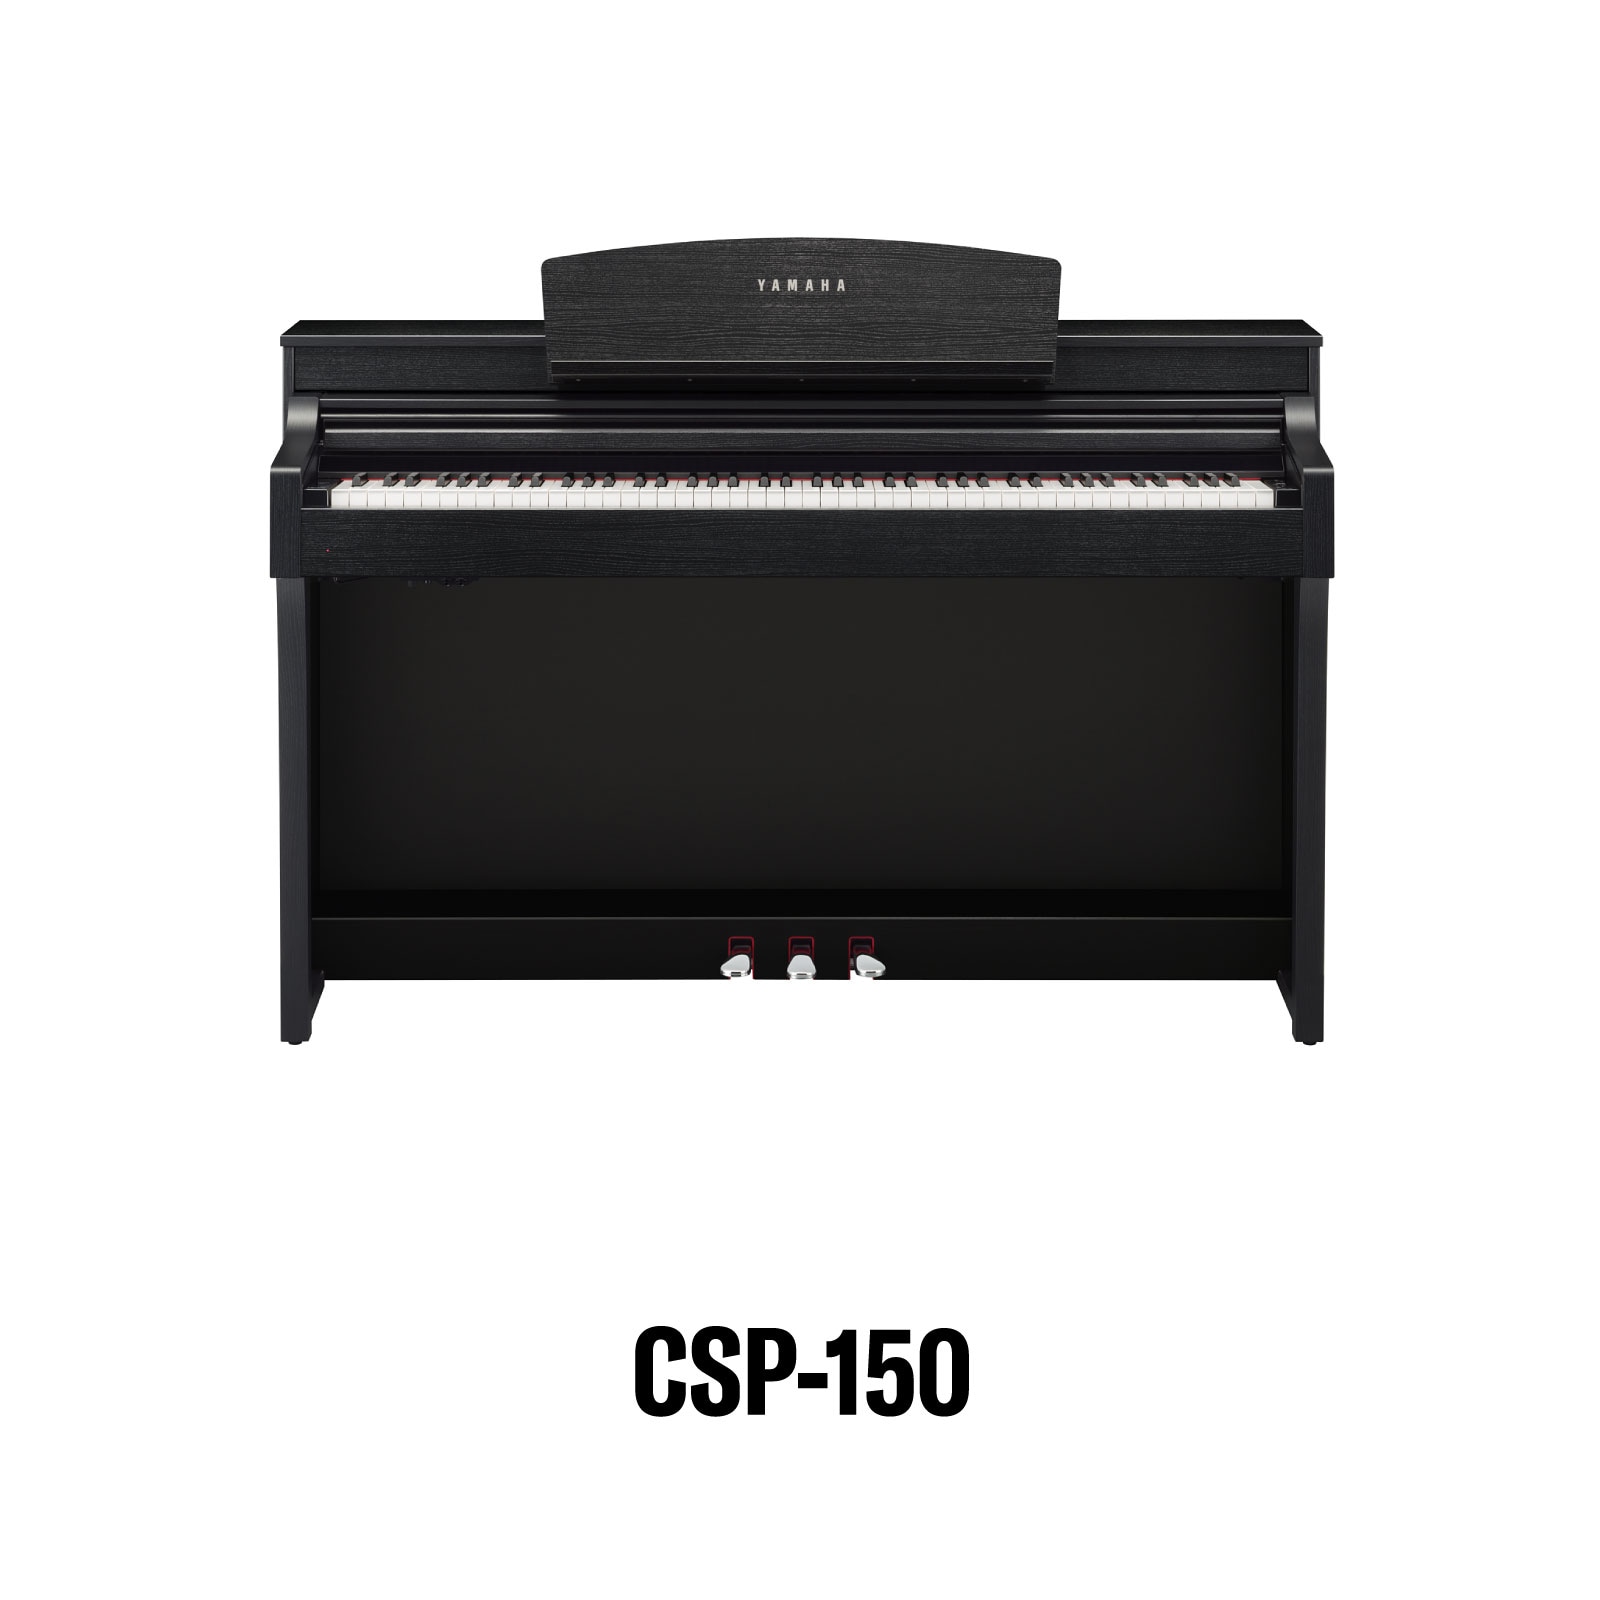 CSP-150